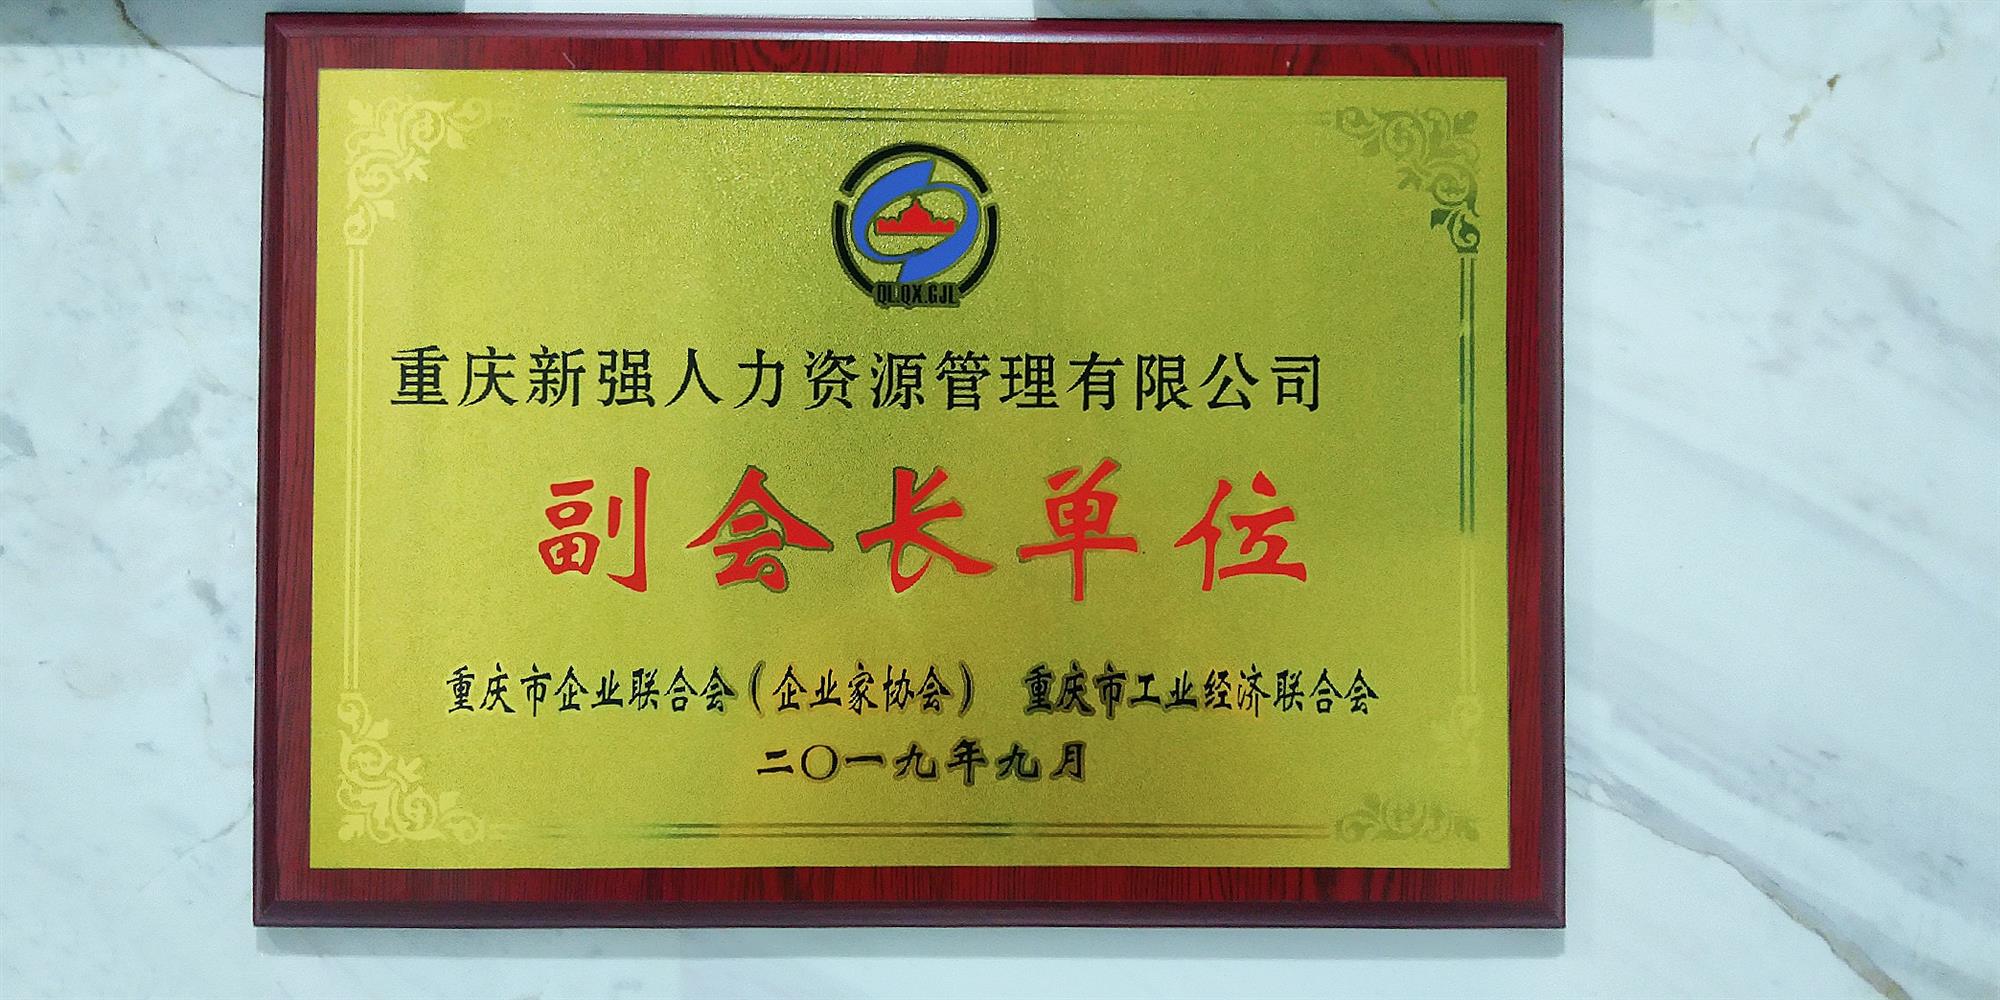 重庆企业联合会（企业家协会） 重庆市工业经济联合会副会长单位